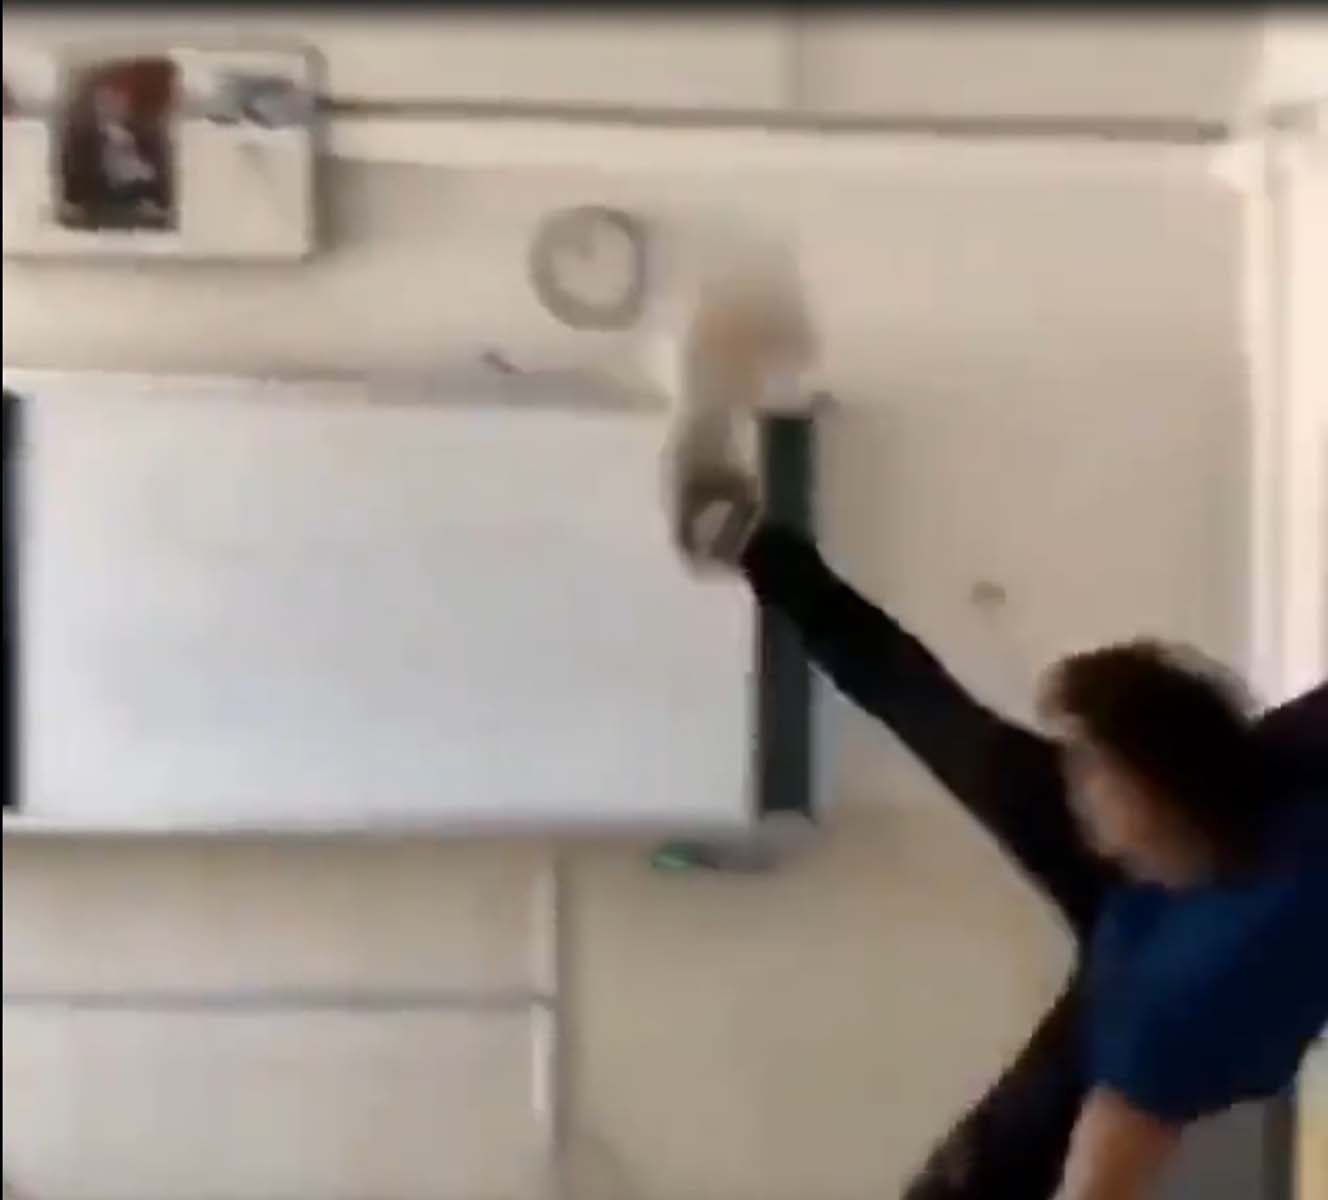 Antalya'nın Serik ilçesindeki bir okulda öğrencilerin Kur'an-ı Kerim'e tekme attığı video tepki çekti. 